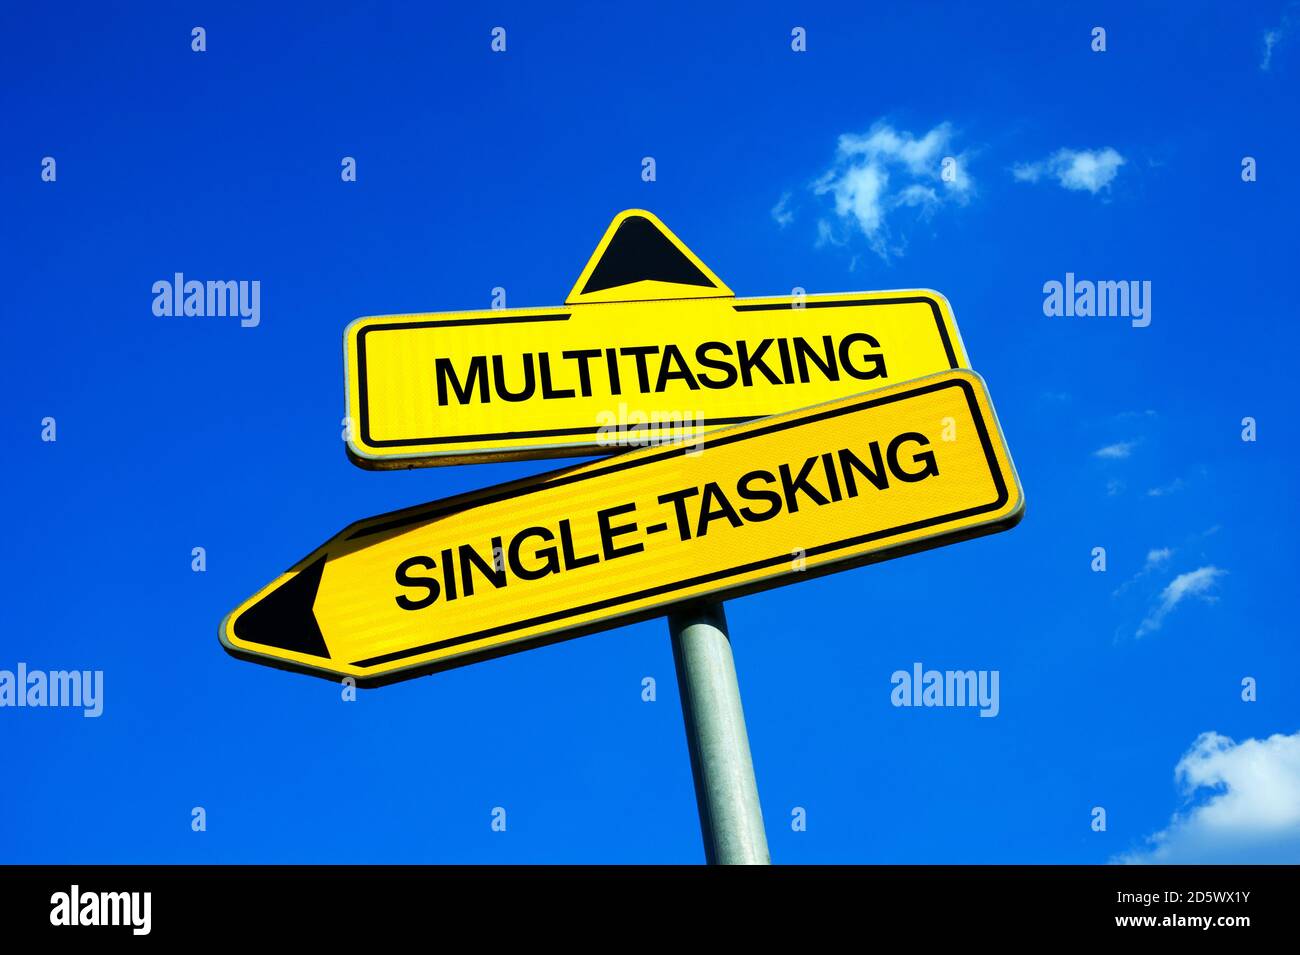 Multitasking vs Single-Tasking - Verkehrszeichen mit zwei Optionen - Konzentration und Konzentration auf eine Aufgabe und Aktivität oder effektiv Und produktive Leistung Stockfoto